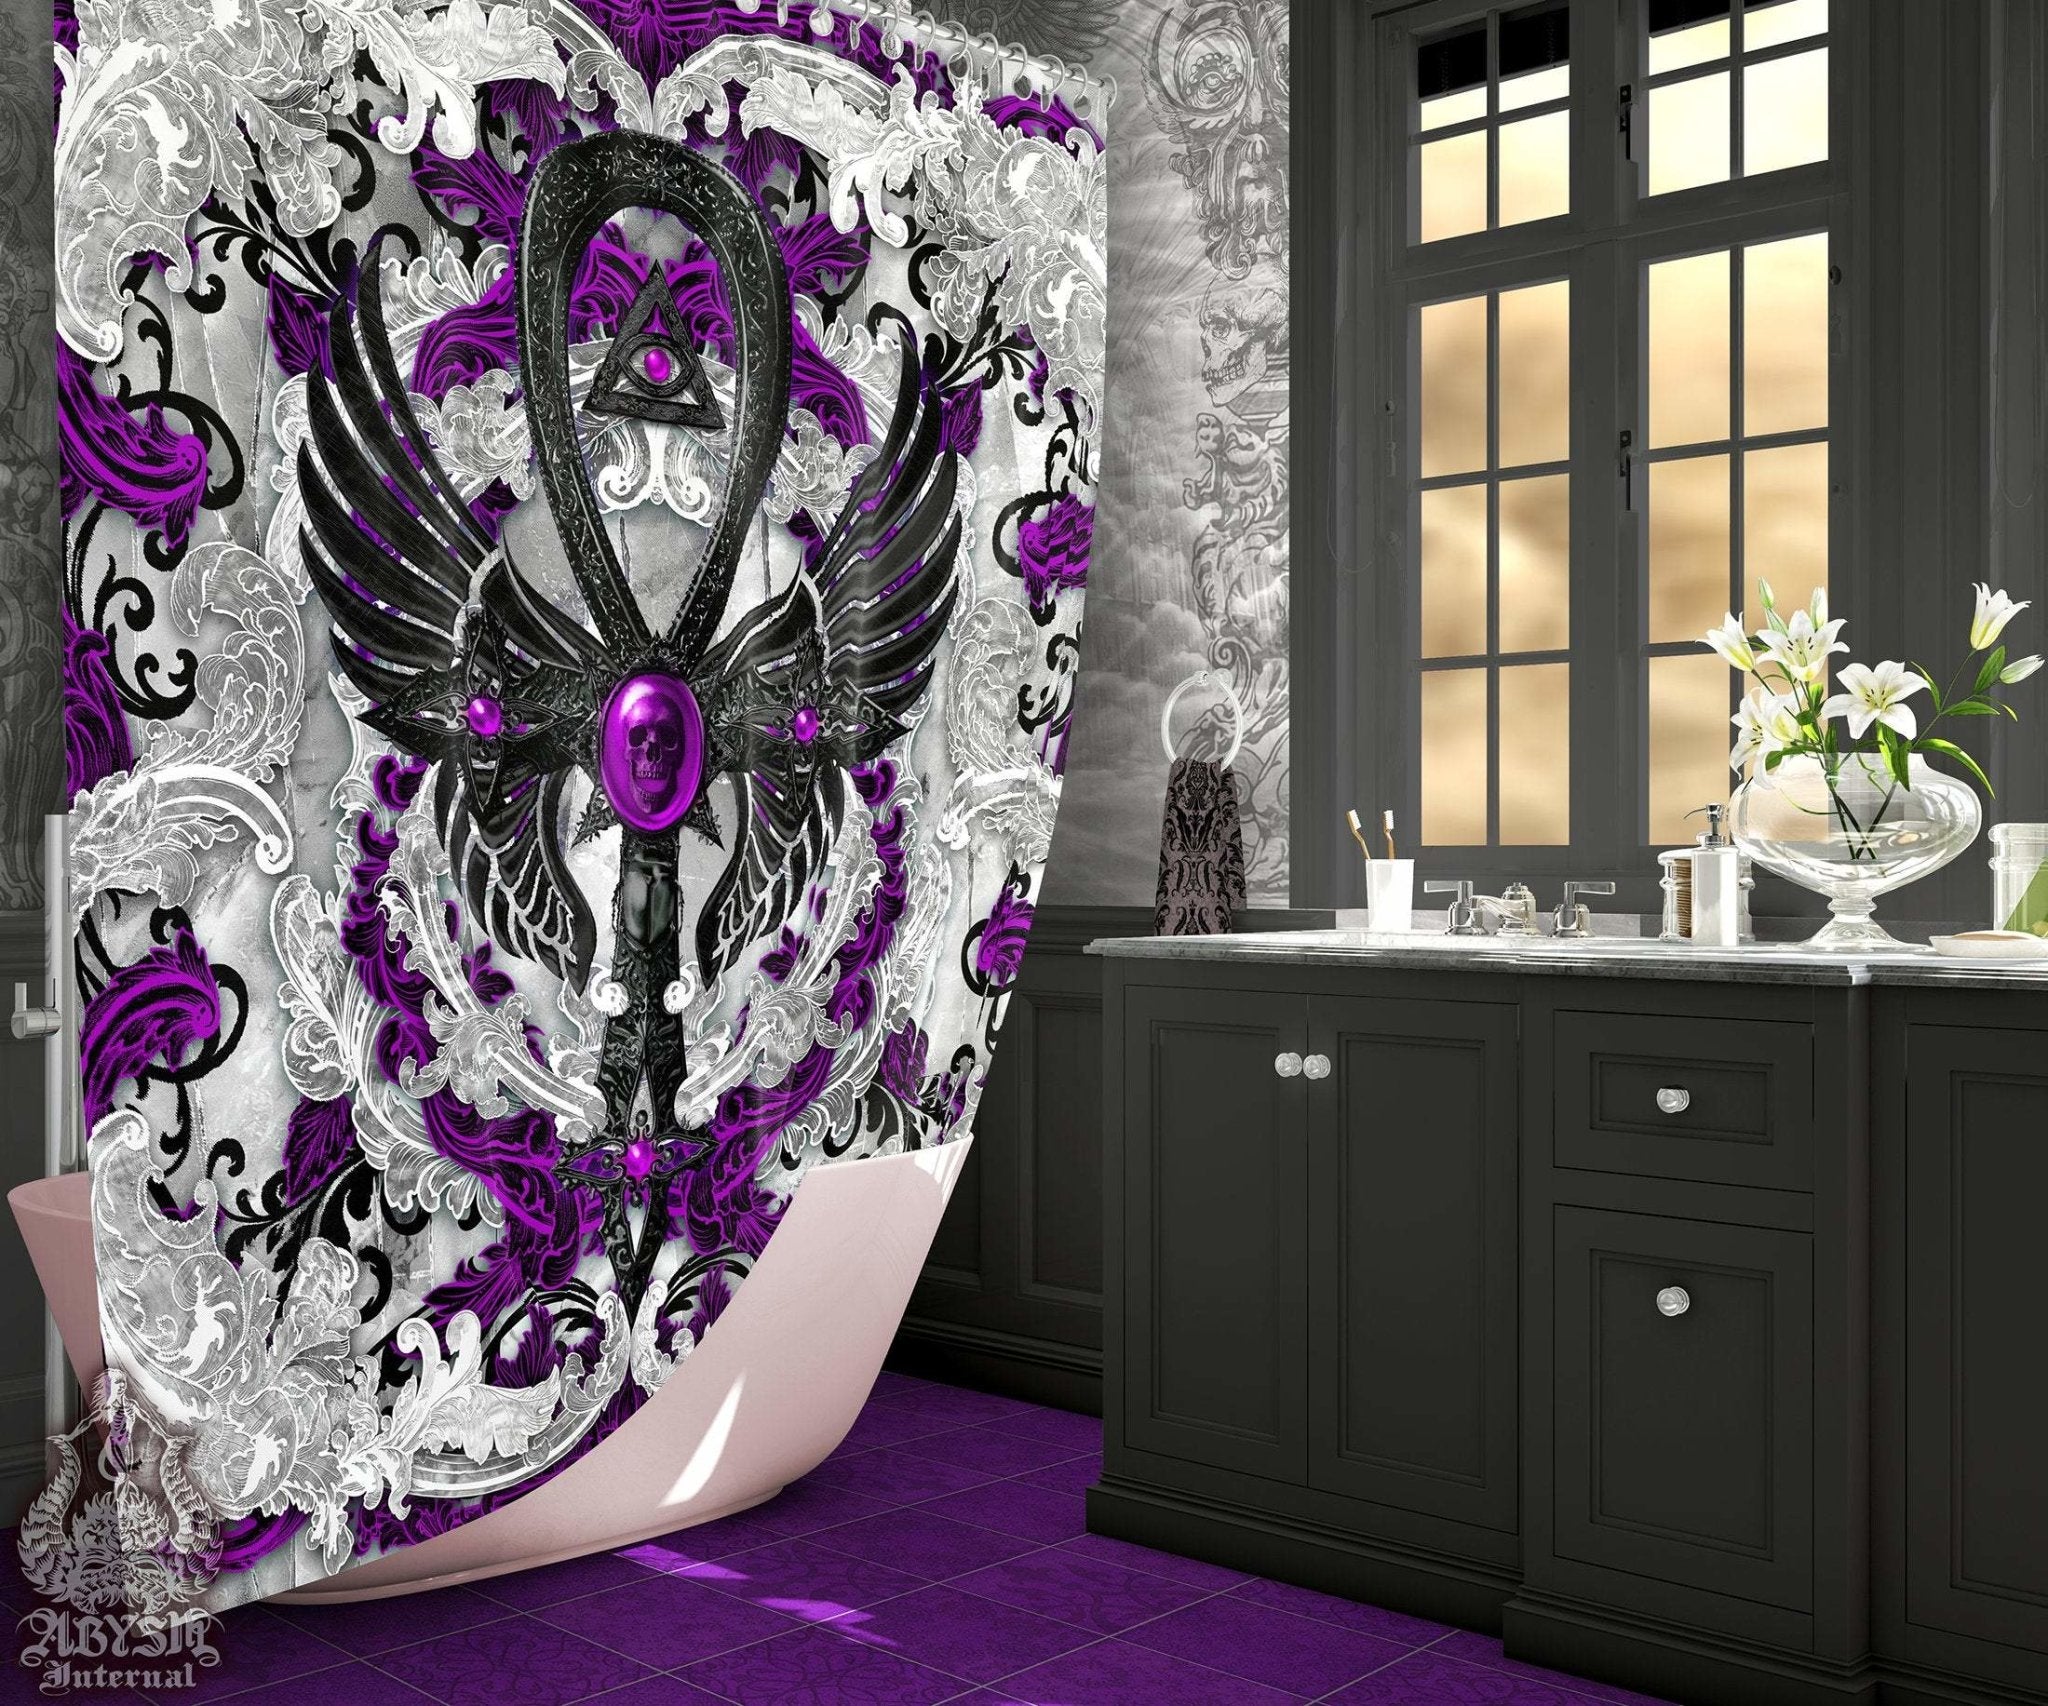 Pastel Goth Shower Curtain, Dark Ankh, Gothic Bathroom Decor, Occult - White - Abysm Internal